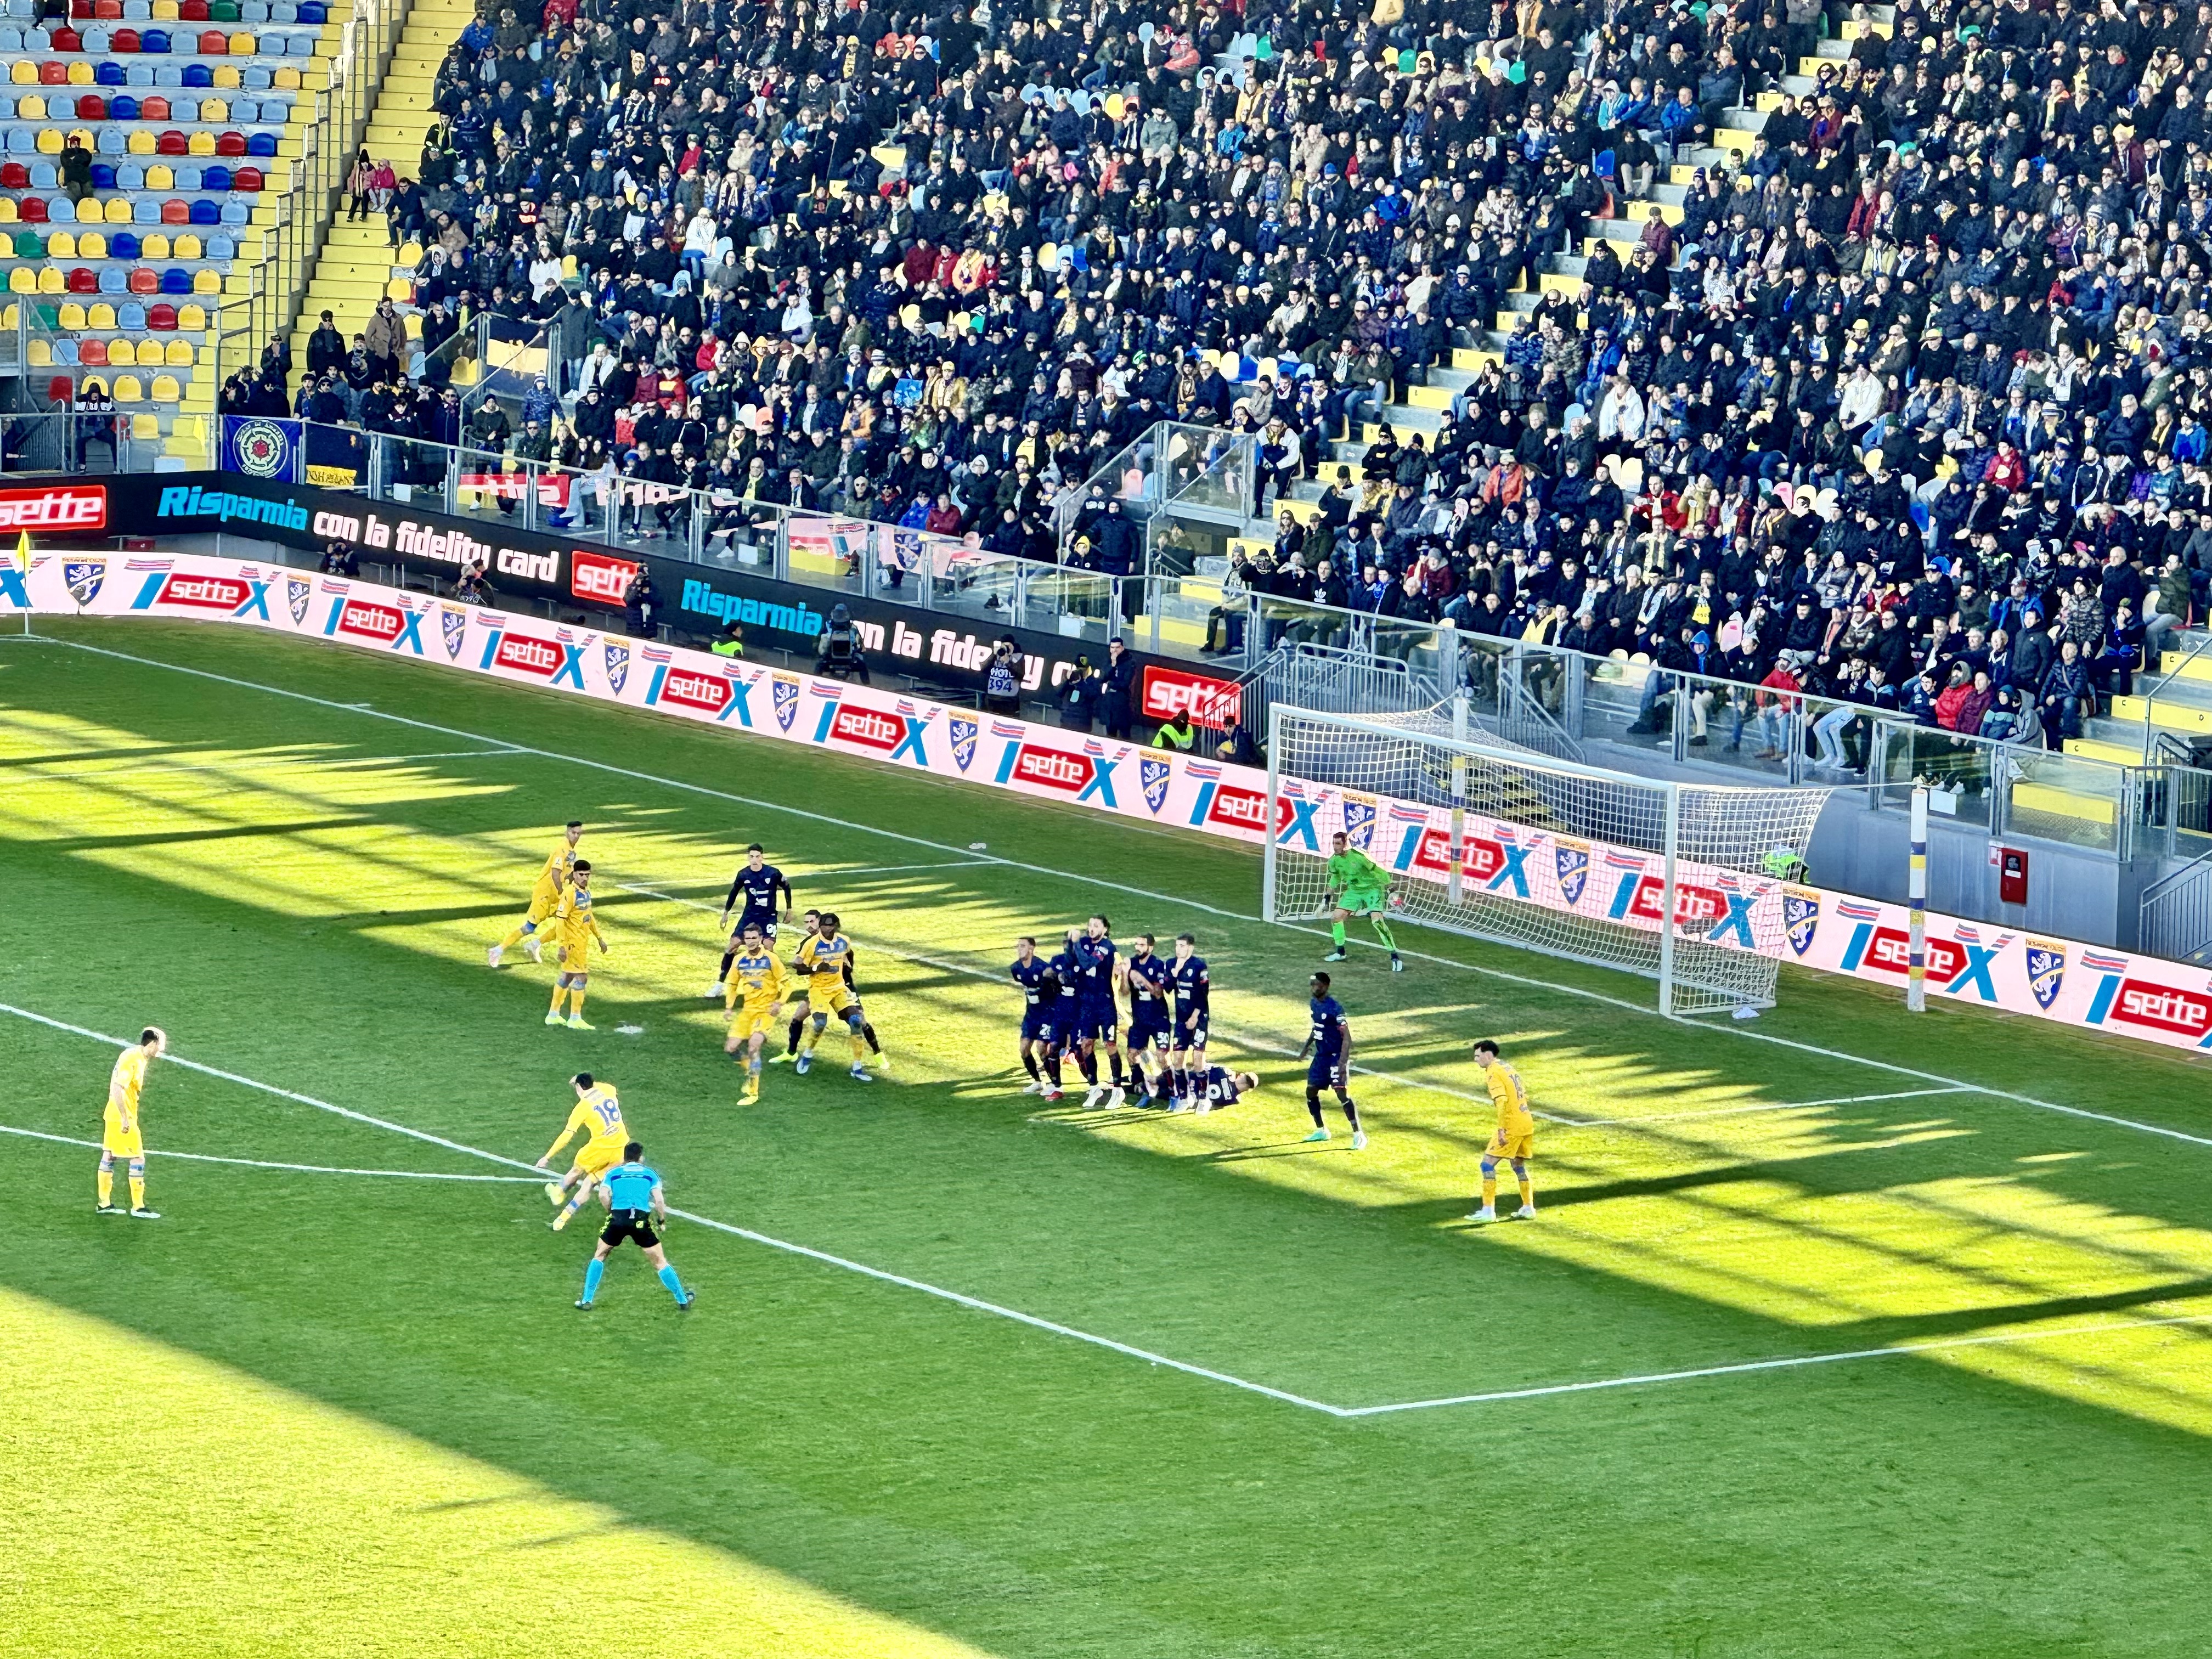 Frosinone - Cagliari 3-1